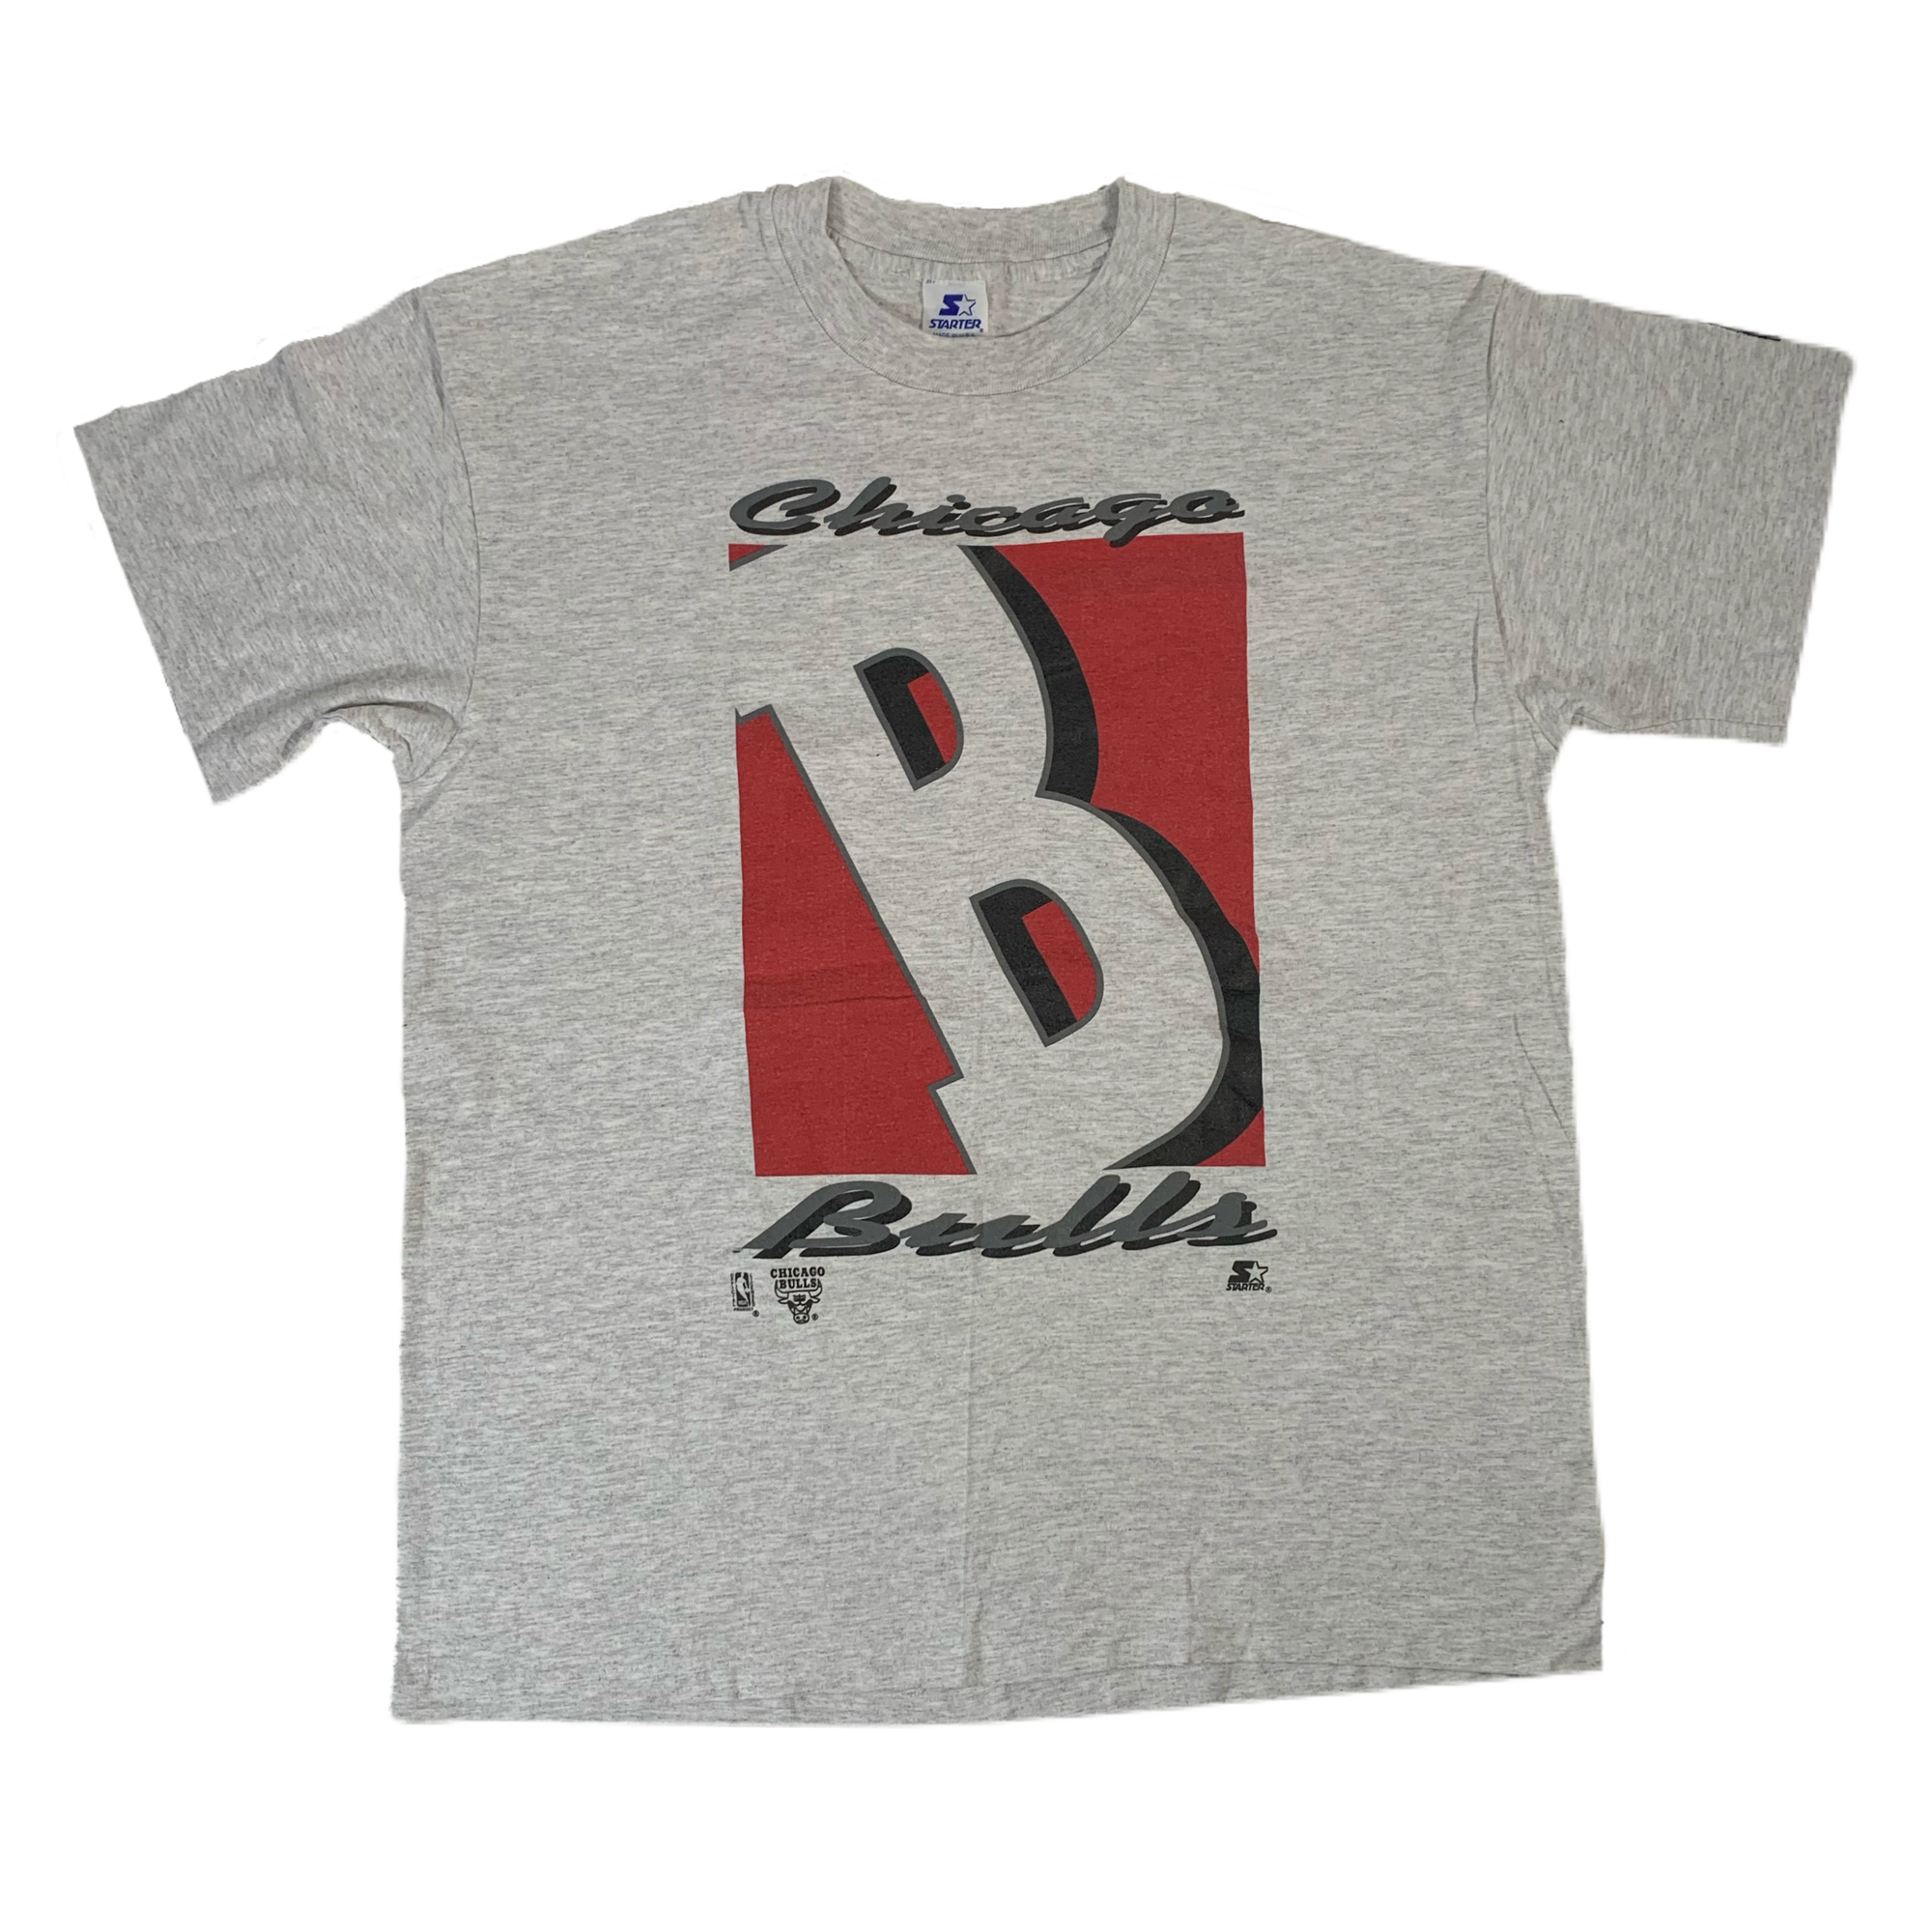 Vintage Chicago Bulls "Starter" T-Shirt - jointcustodydc